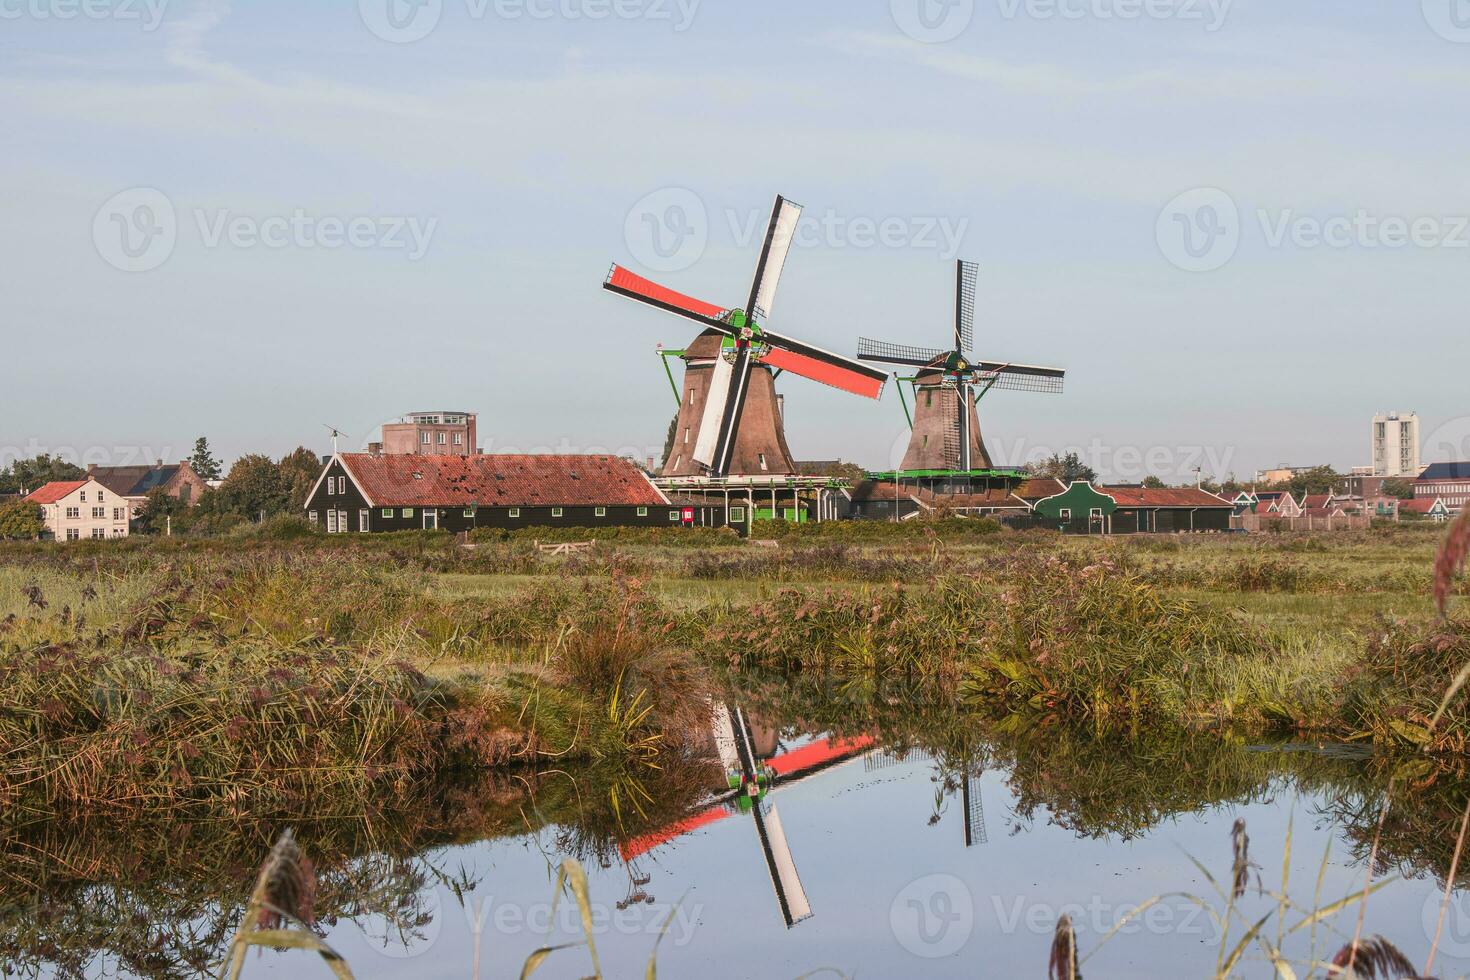 popular turista Mancha zaanse schans es cerca Amsterdam en el Oeste de el Países Bajos. histórico, realista molinos de viento durante amanecer. Holanda punto de referencia foto